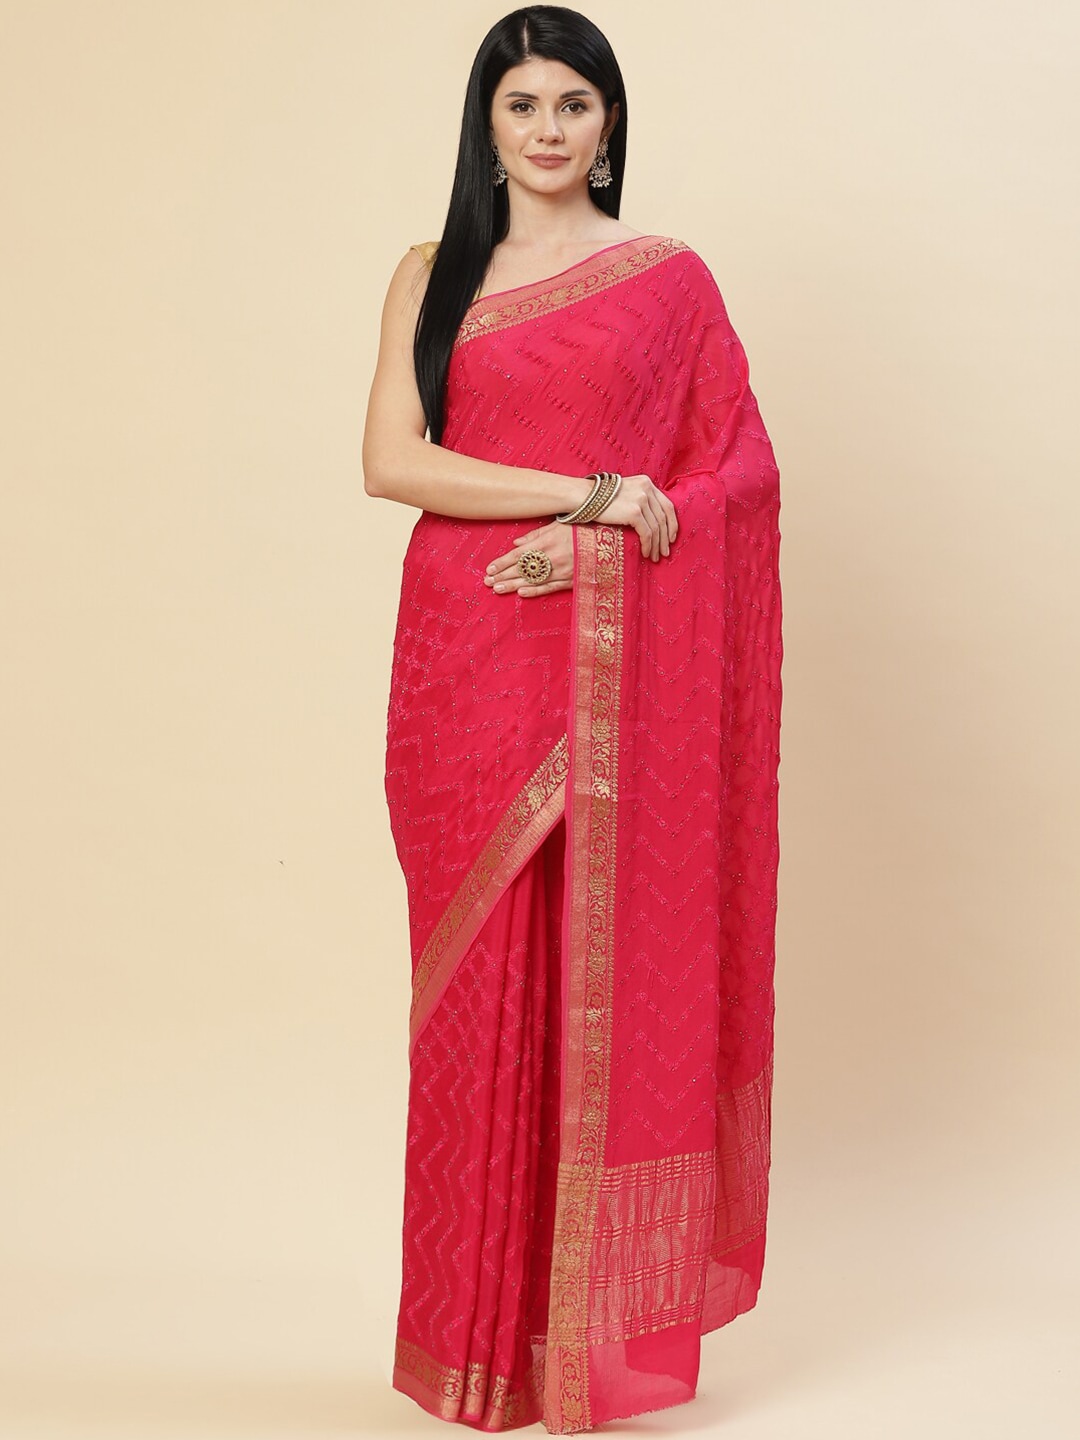 Meena Bazaar Pink & Gold-Toned Embellished Zari Saree Price in India